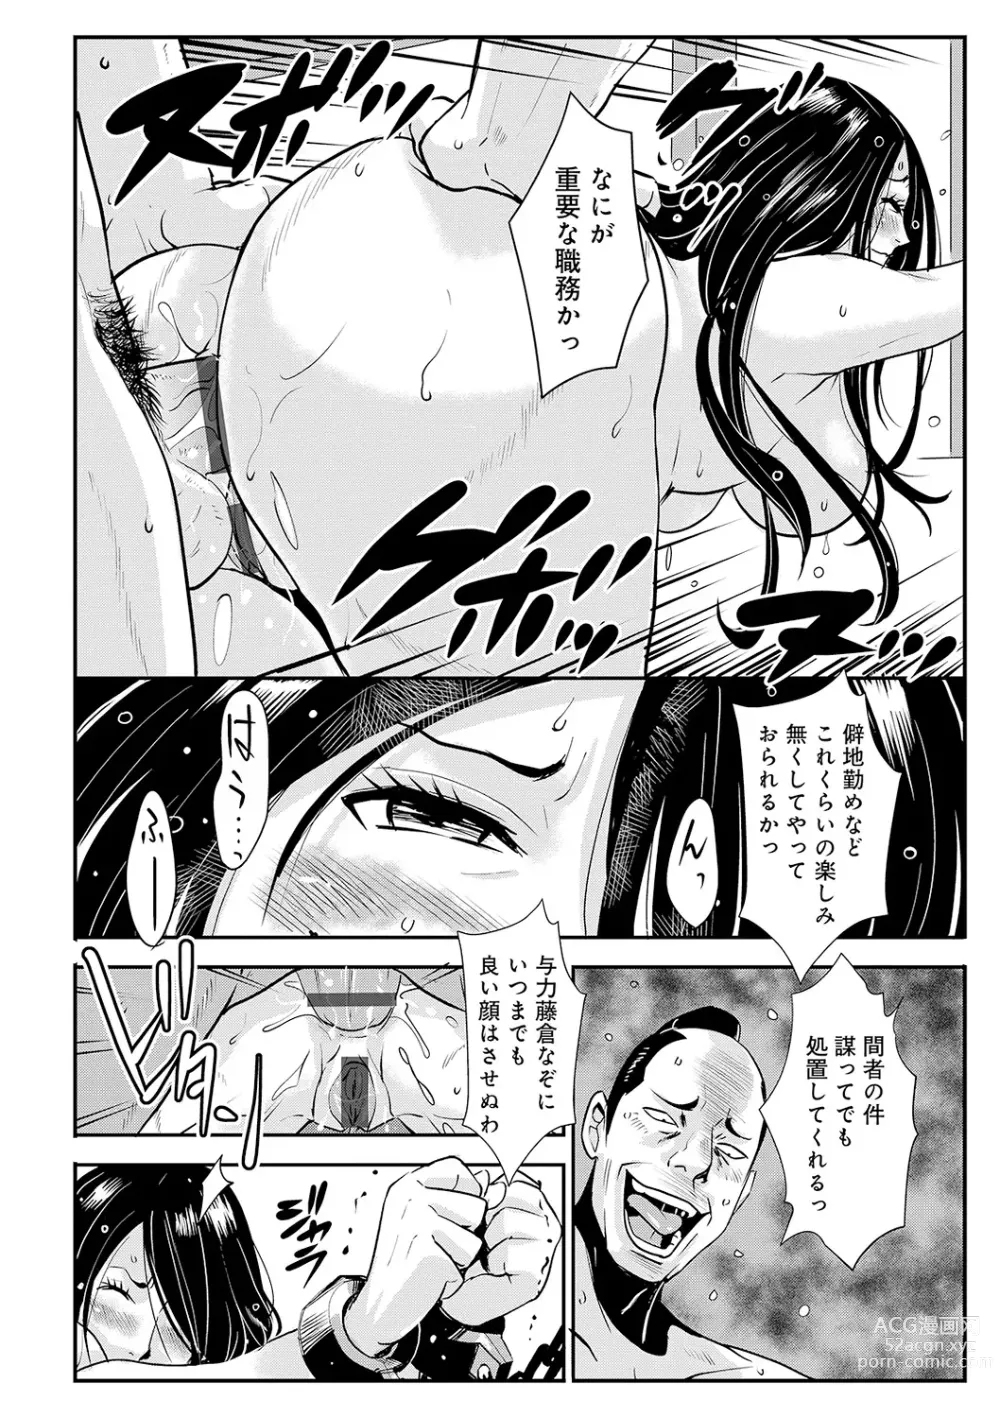 Page 2 of manga Harami samurai 10 ~Koukiku o Kakuchou sare Kanchousareru Onna Kenshi~